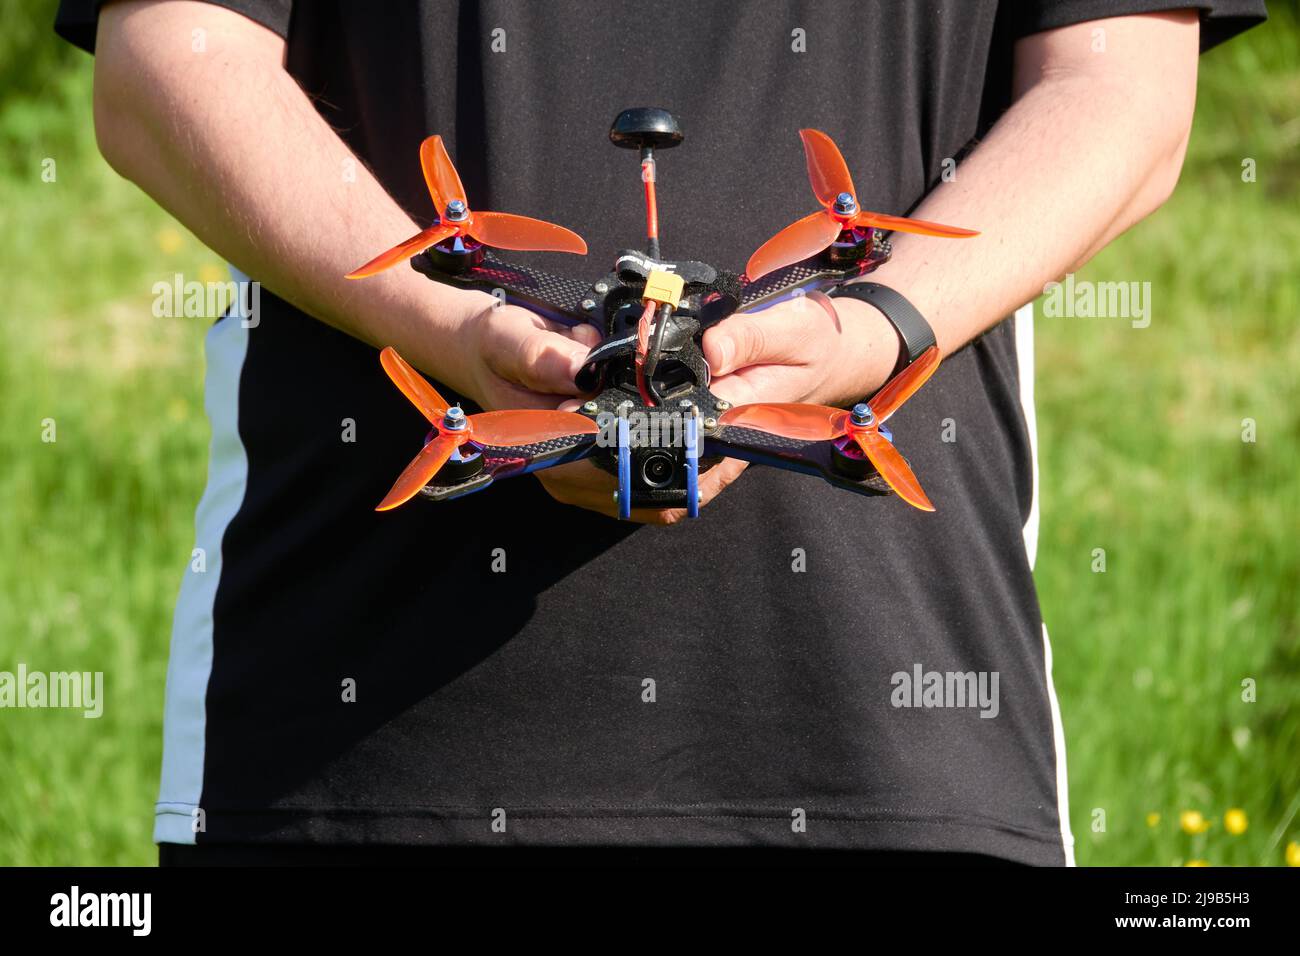 Le drone noir également quad de course, avec hélice orange, est tenu par les mains humaines. Herbe floue en arrière-plan. Allemagne. Banque D'Images